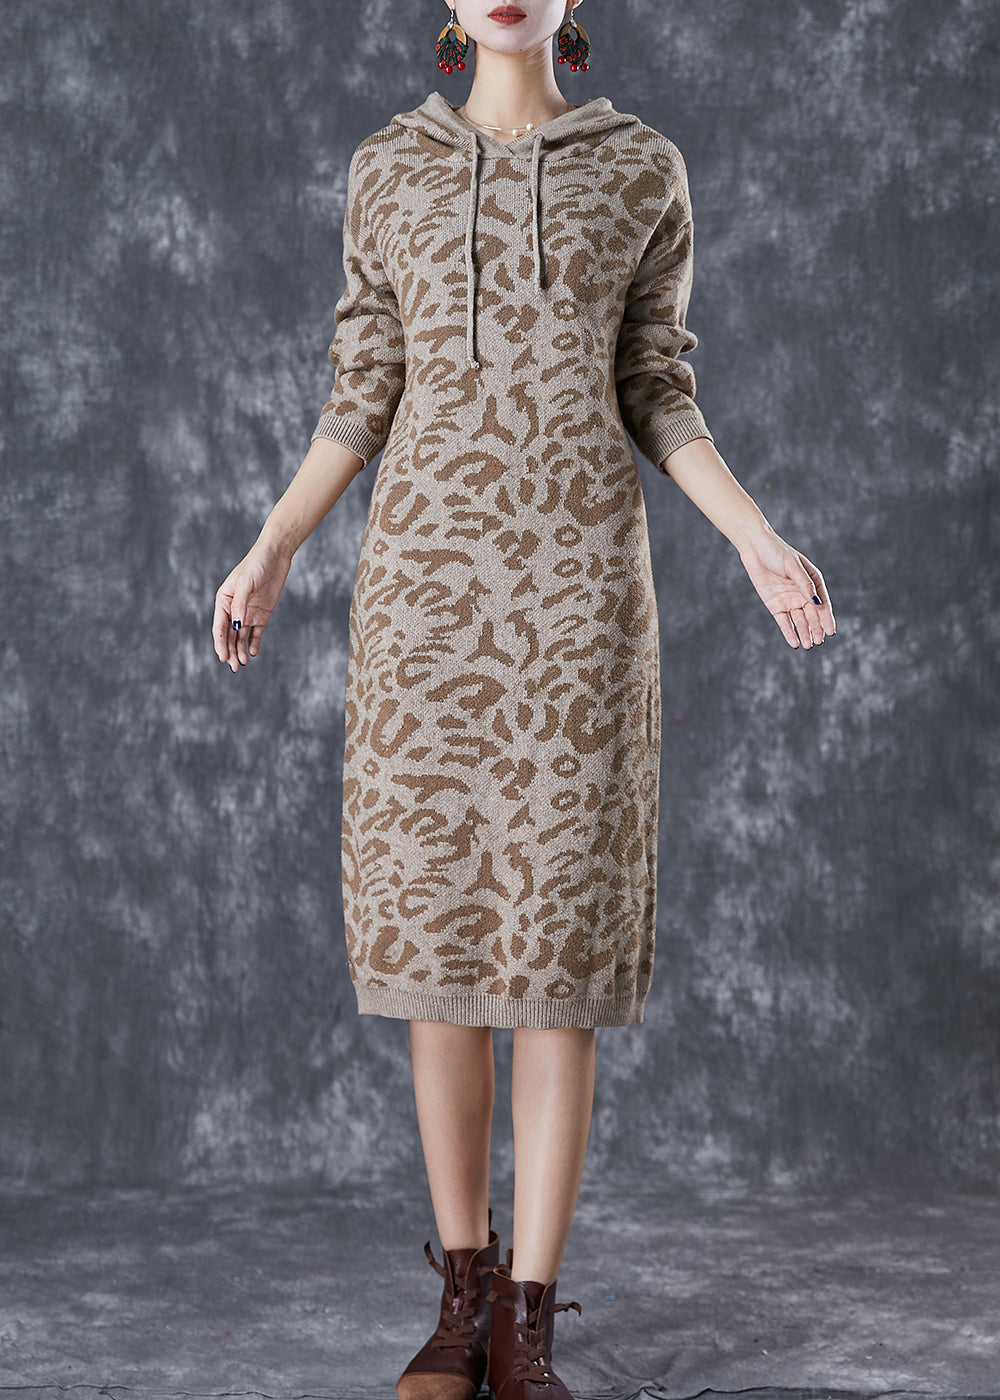 Khaki Leopard Print Knit Sweatshirt Dress Hooded Drawstring Fall